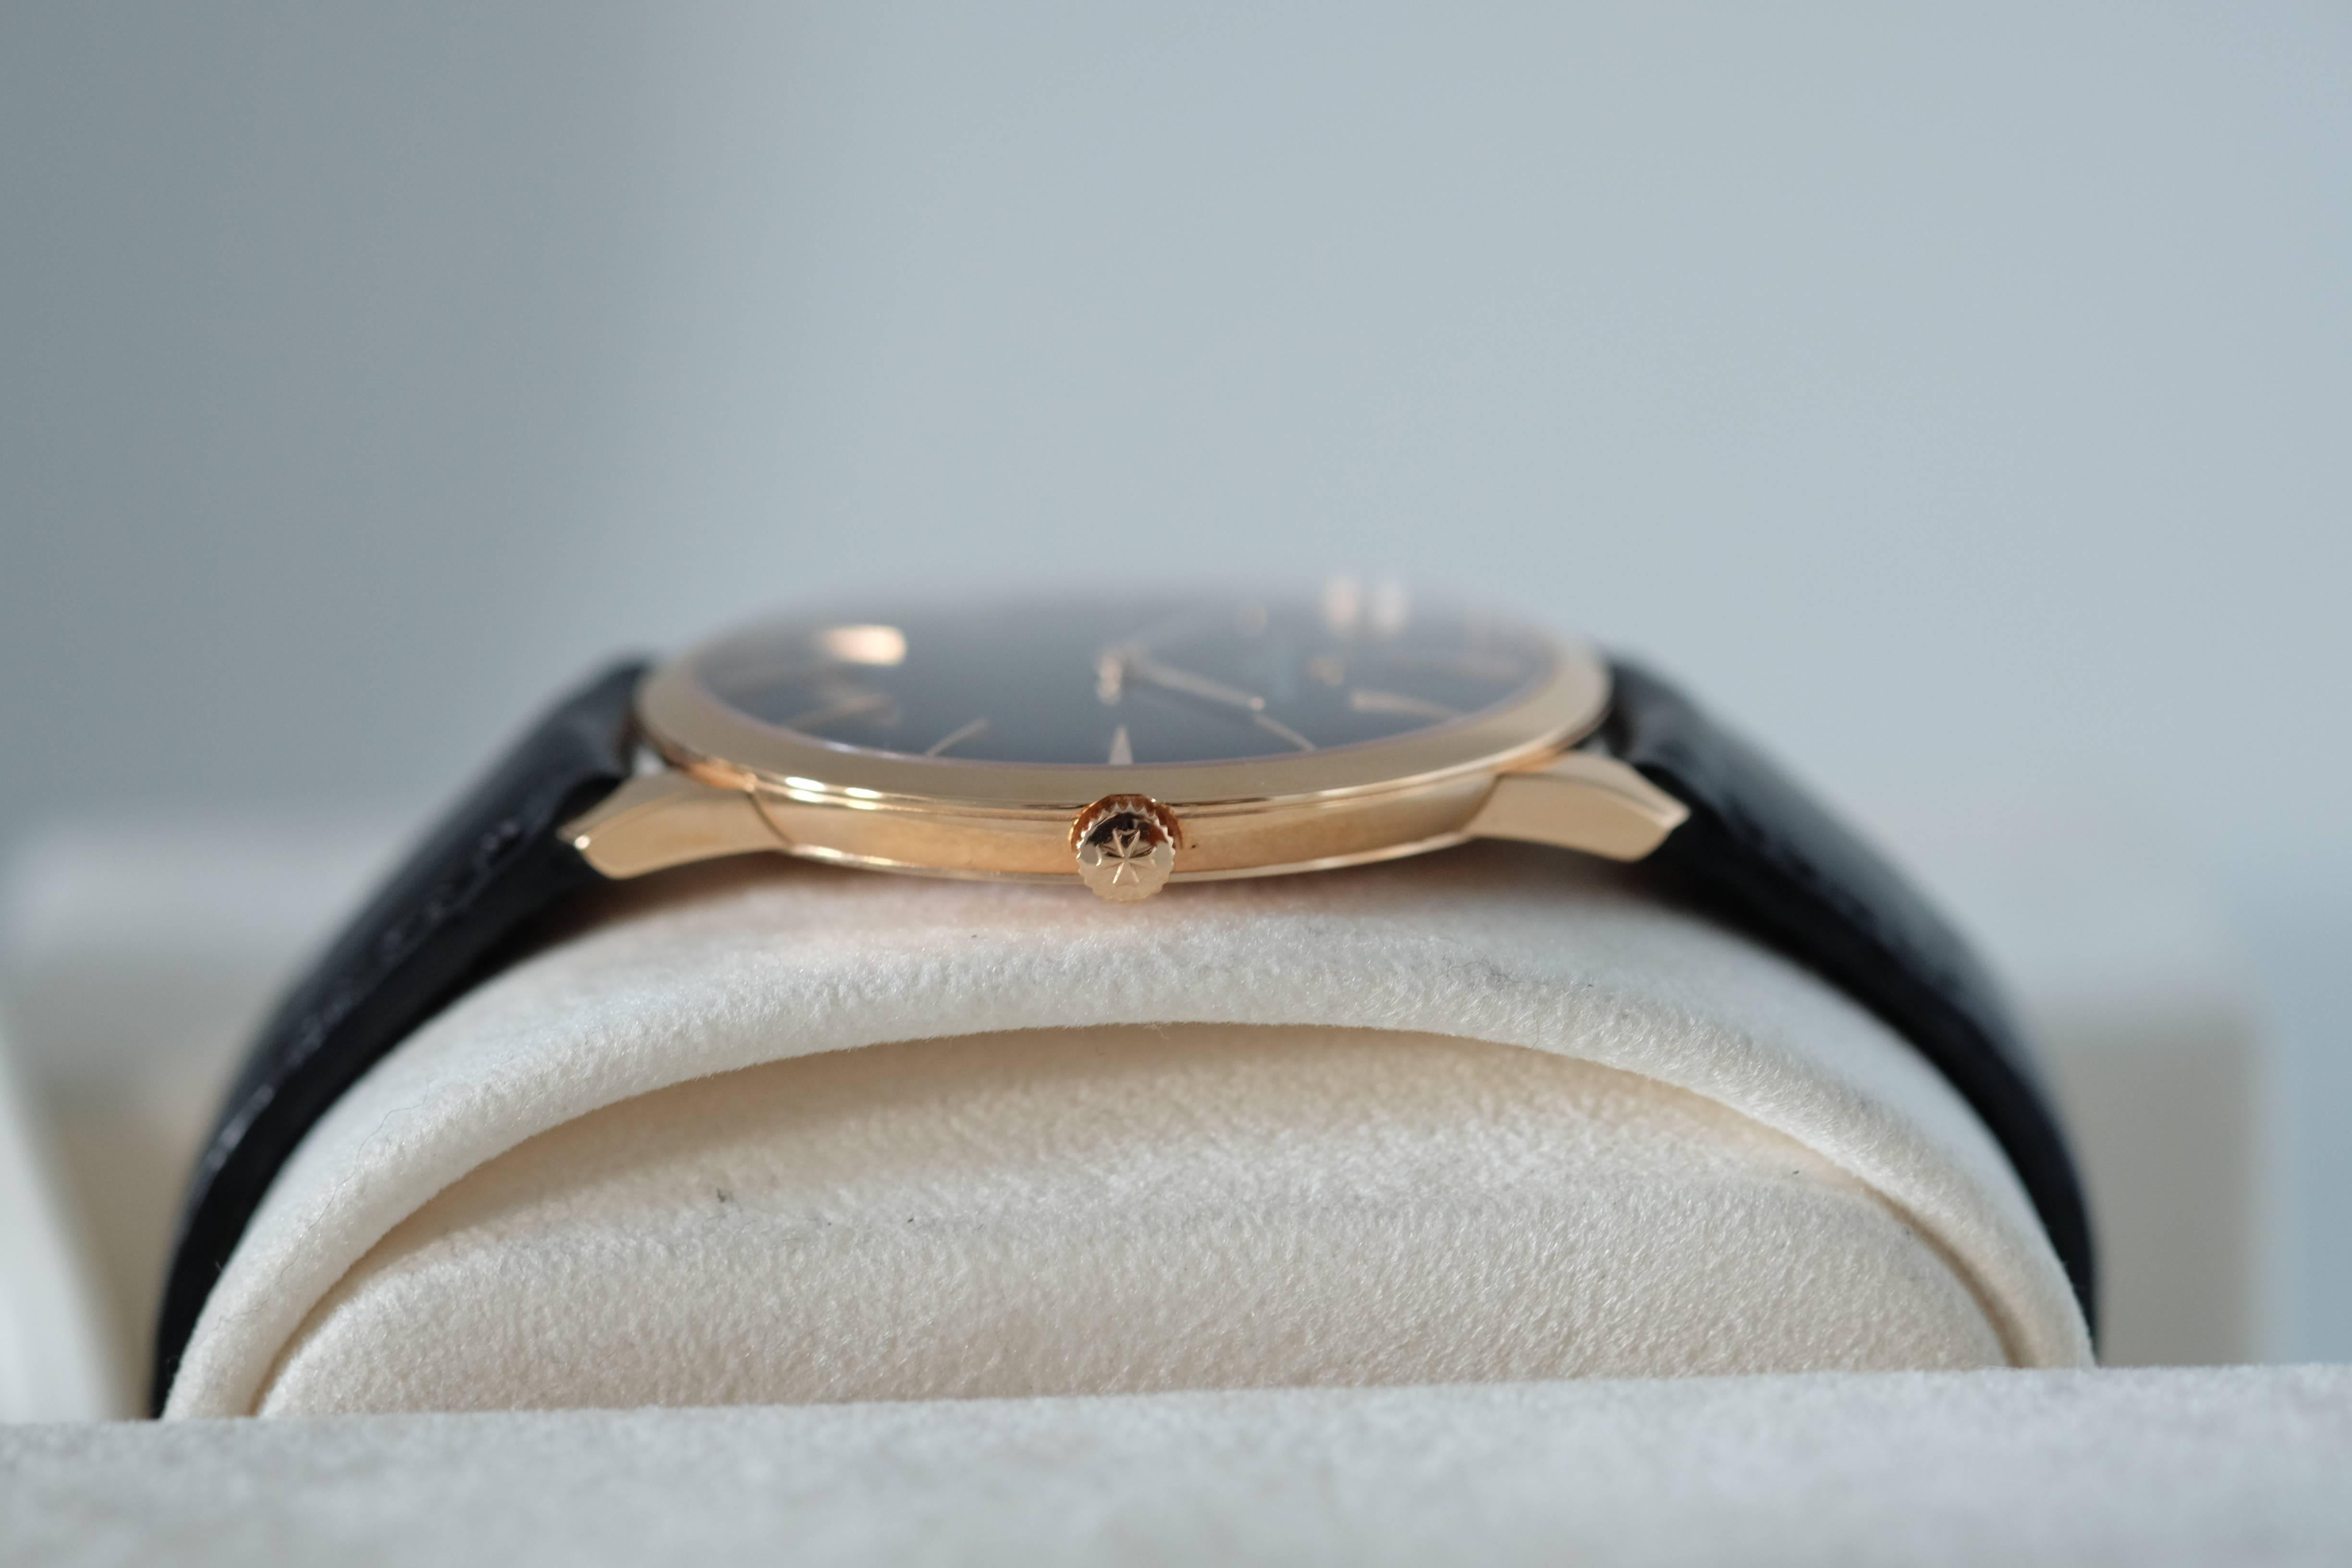 Vacheron Constantin Rose Gold Patrimony Special Boutique Wristwatch For Sale 2